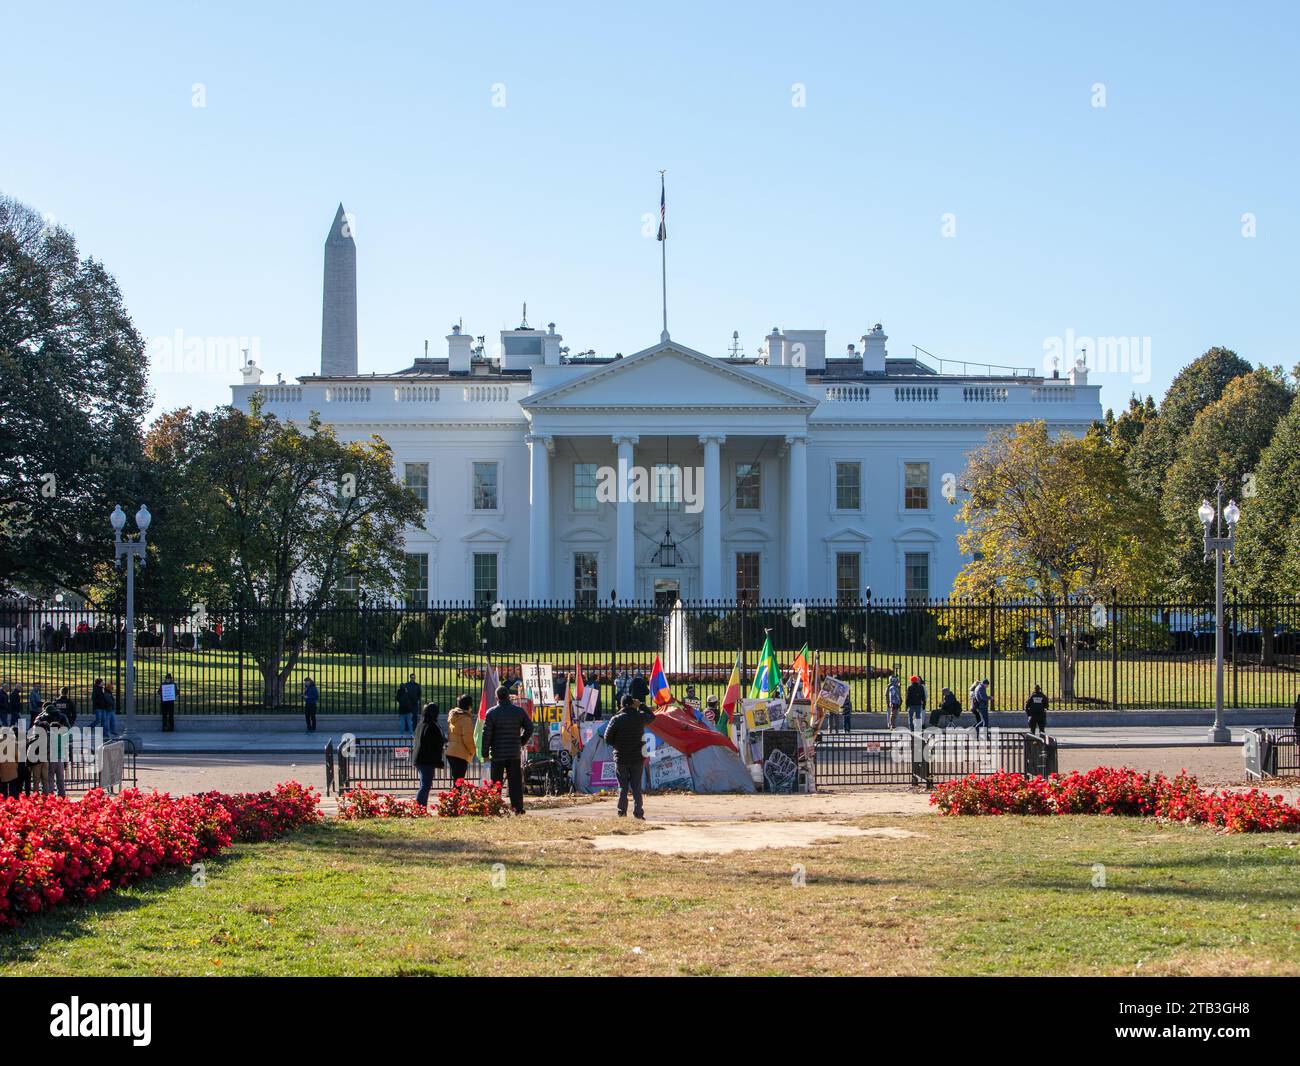 La Casa Bianca è la residenza ufficiale e il luogo di lavoro del presidente degli Stati Uniti, con i manifestanti sul retro dell'edificio sotto il sole. Foto Stock